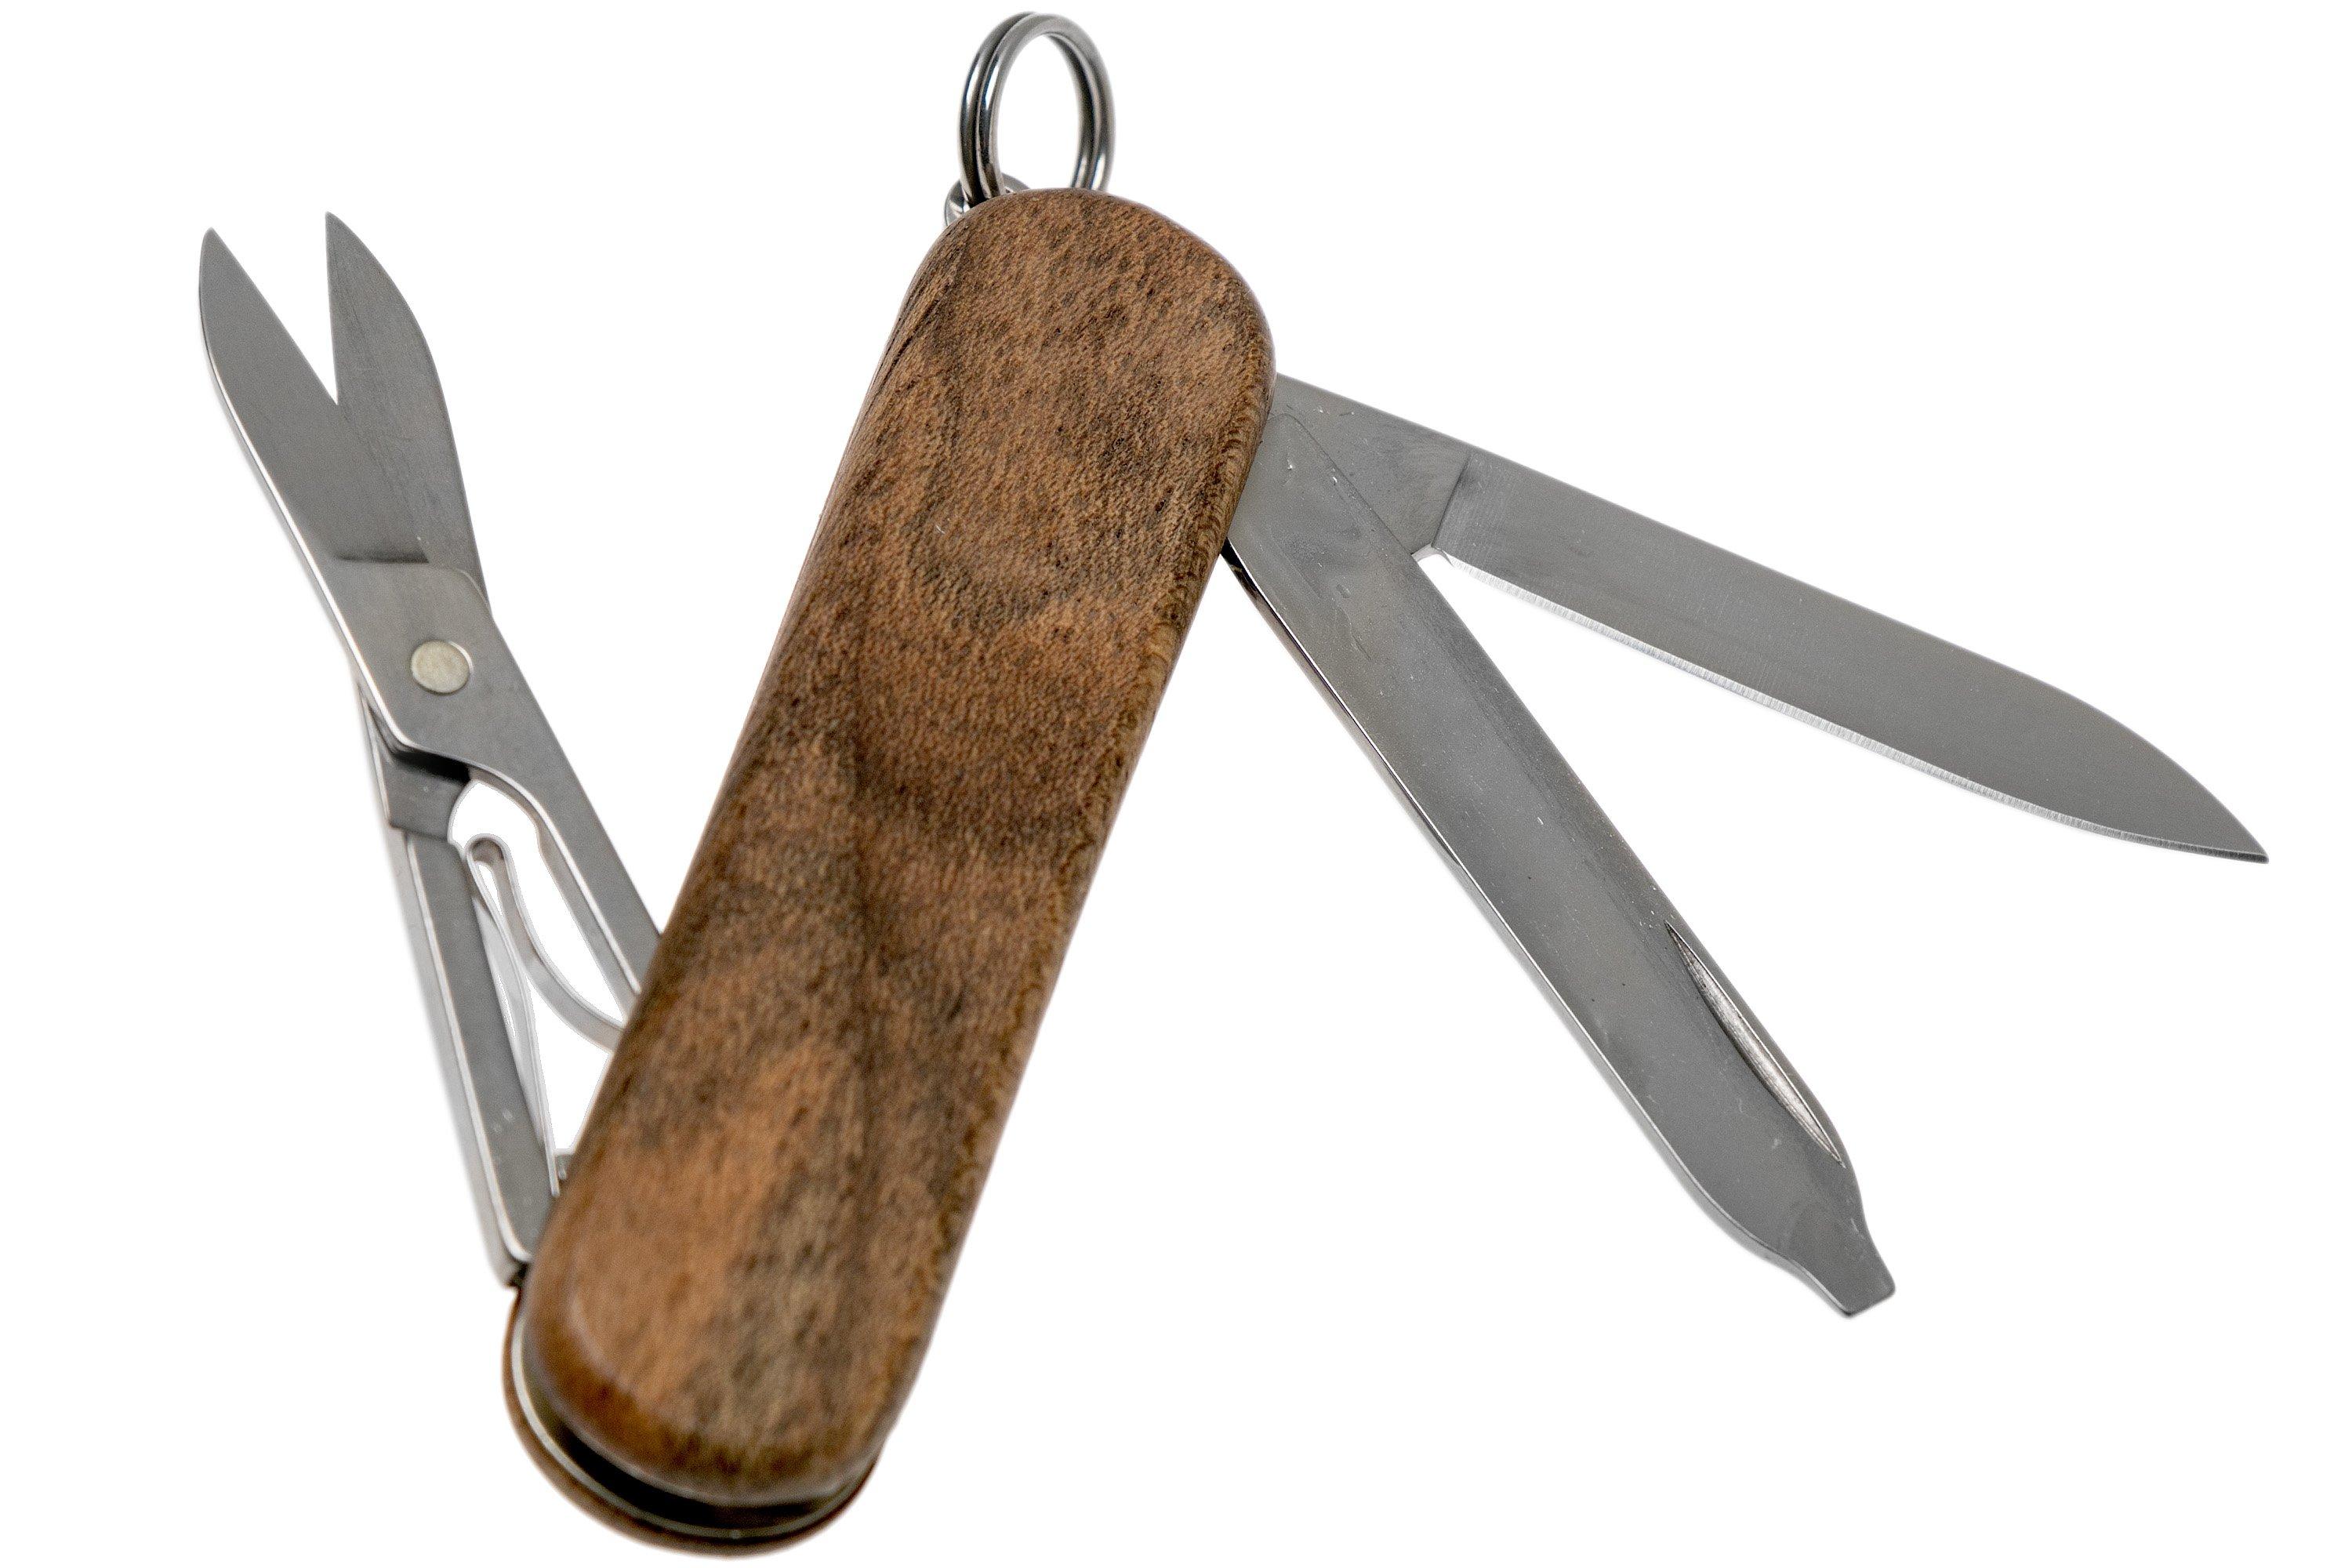 Victorinox Classic SD Swiss Army Knife (Walnut Wood)